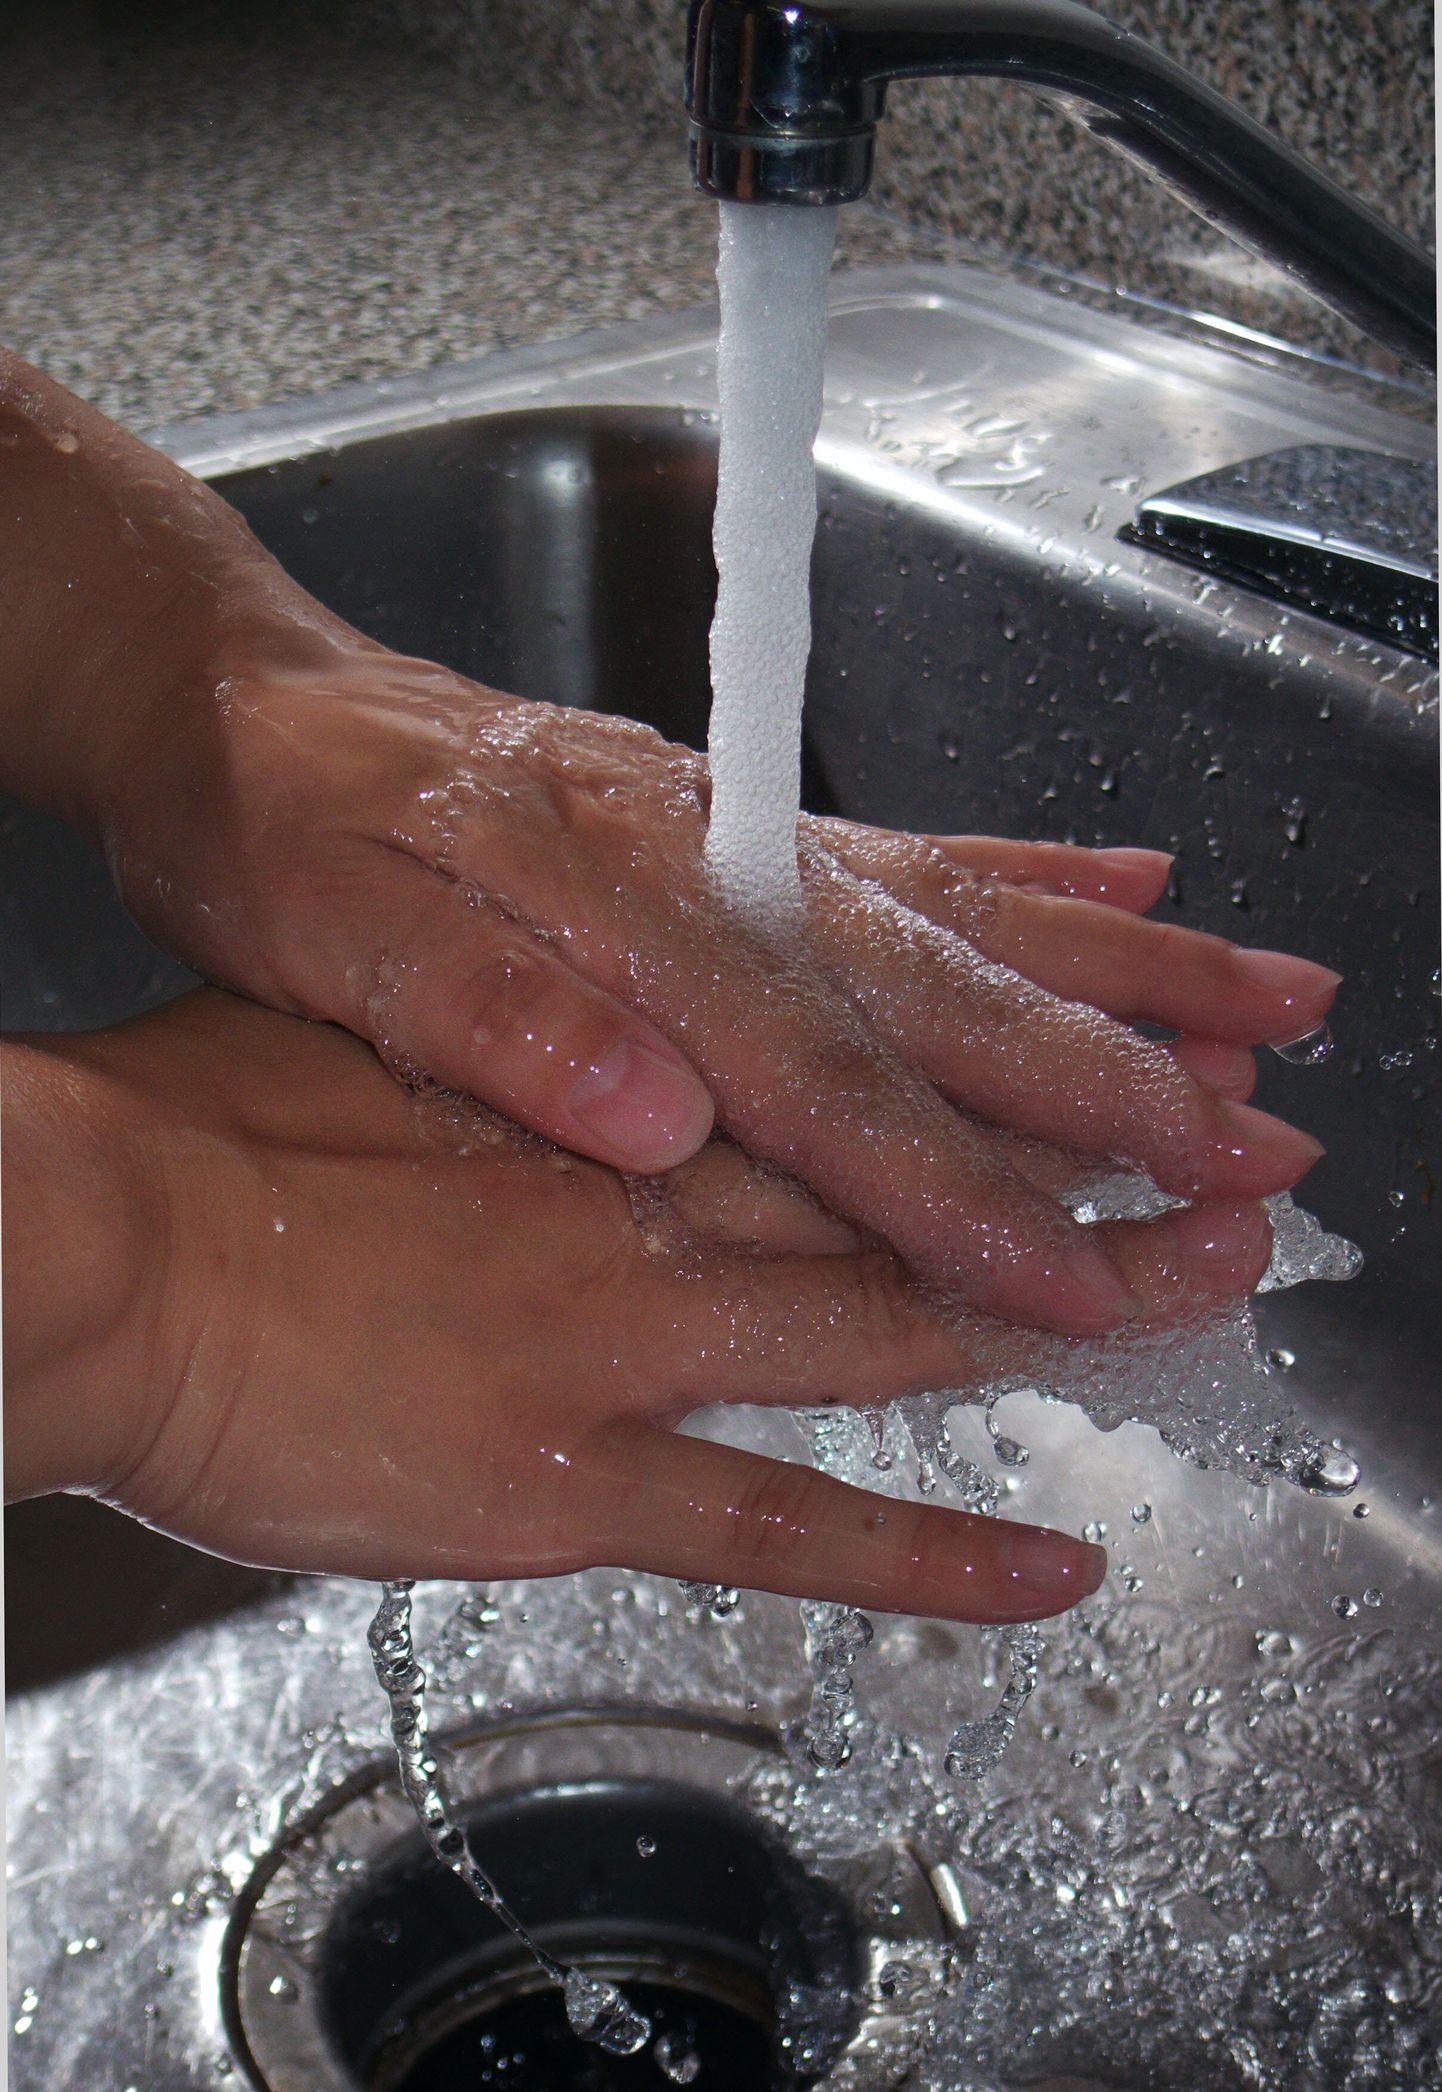 Täna on rahvusvaheline käte pesemise päev